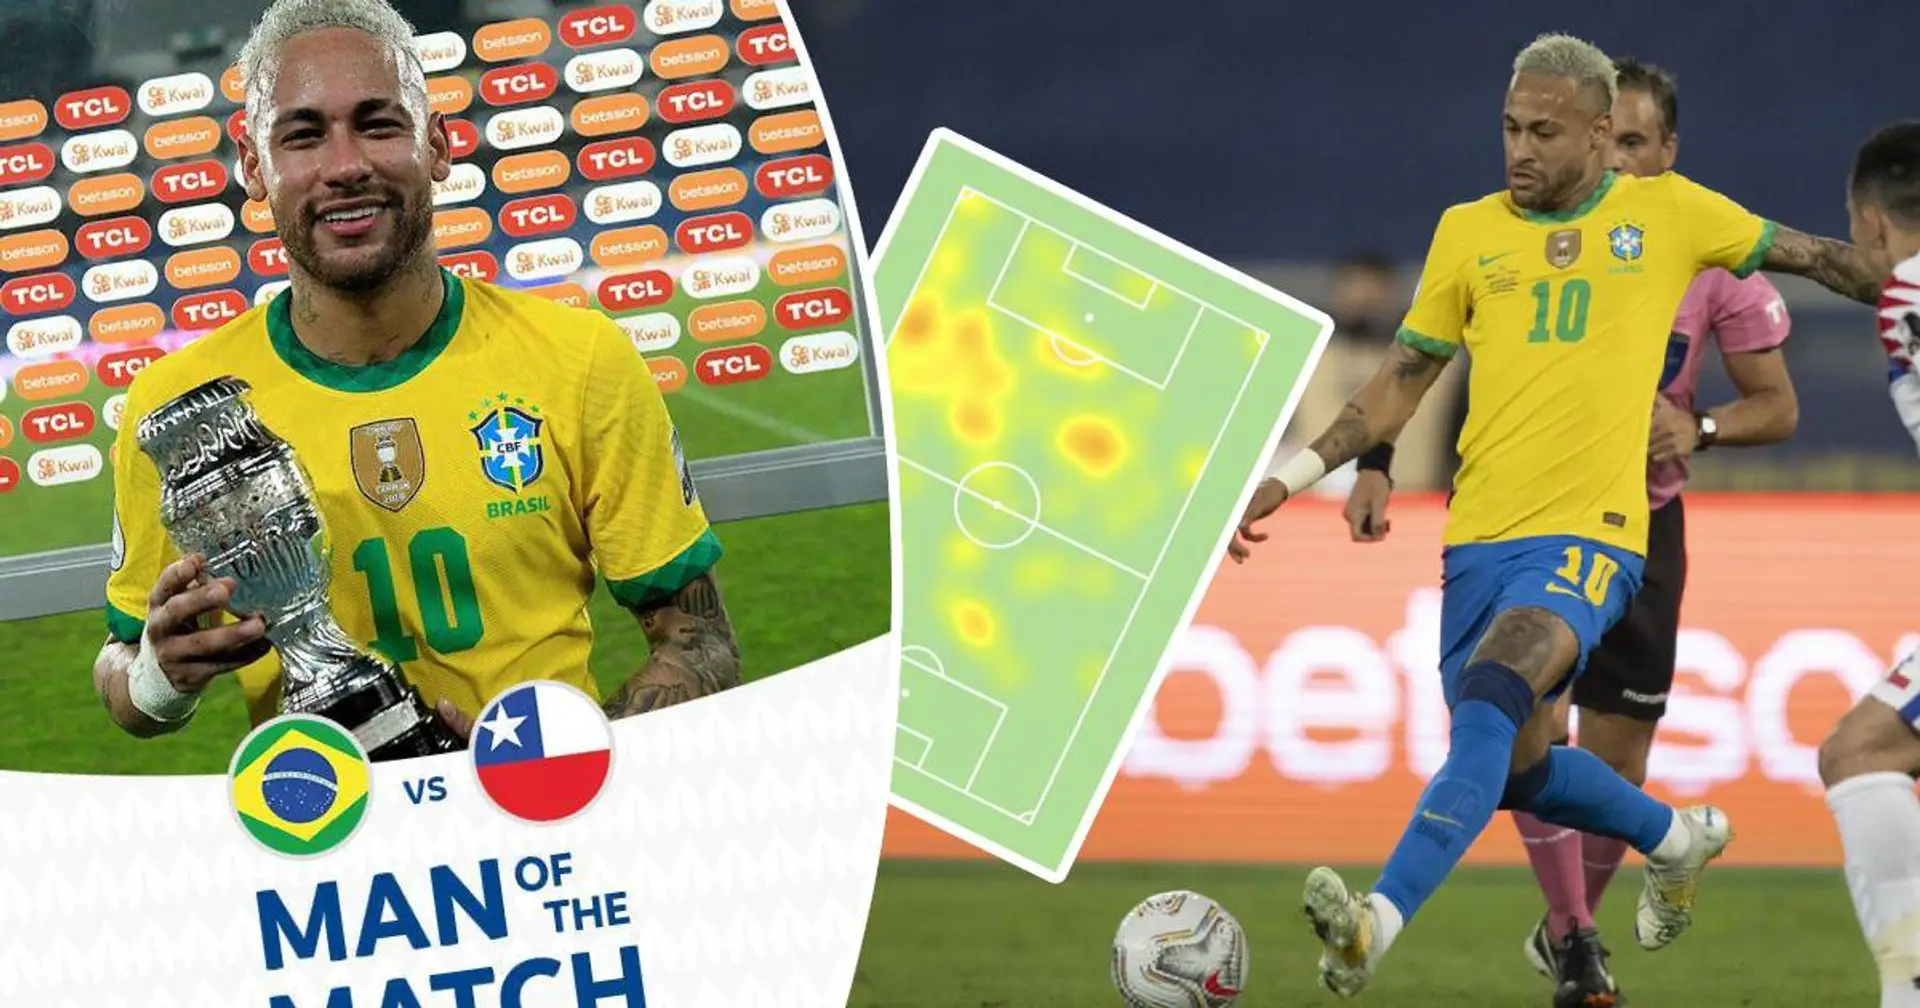 Neymar désigné Homme du match contre le Chili! Les stats qui prouvent que le Brésilien est dans la forme de sa vie!